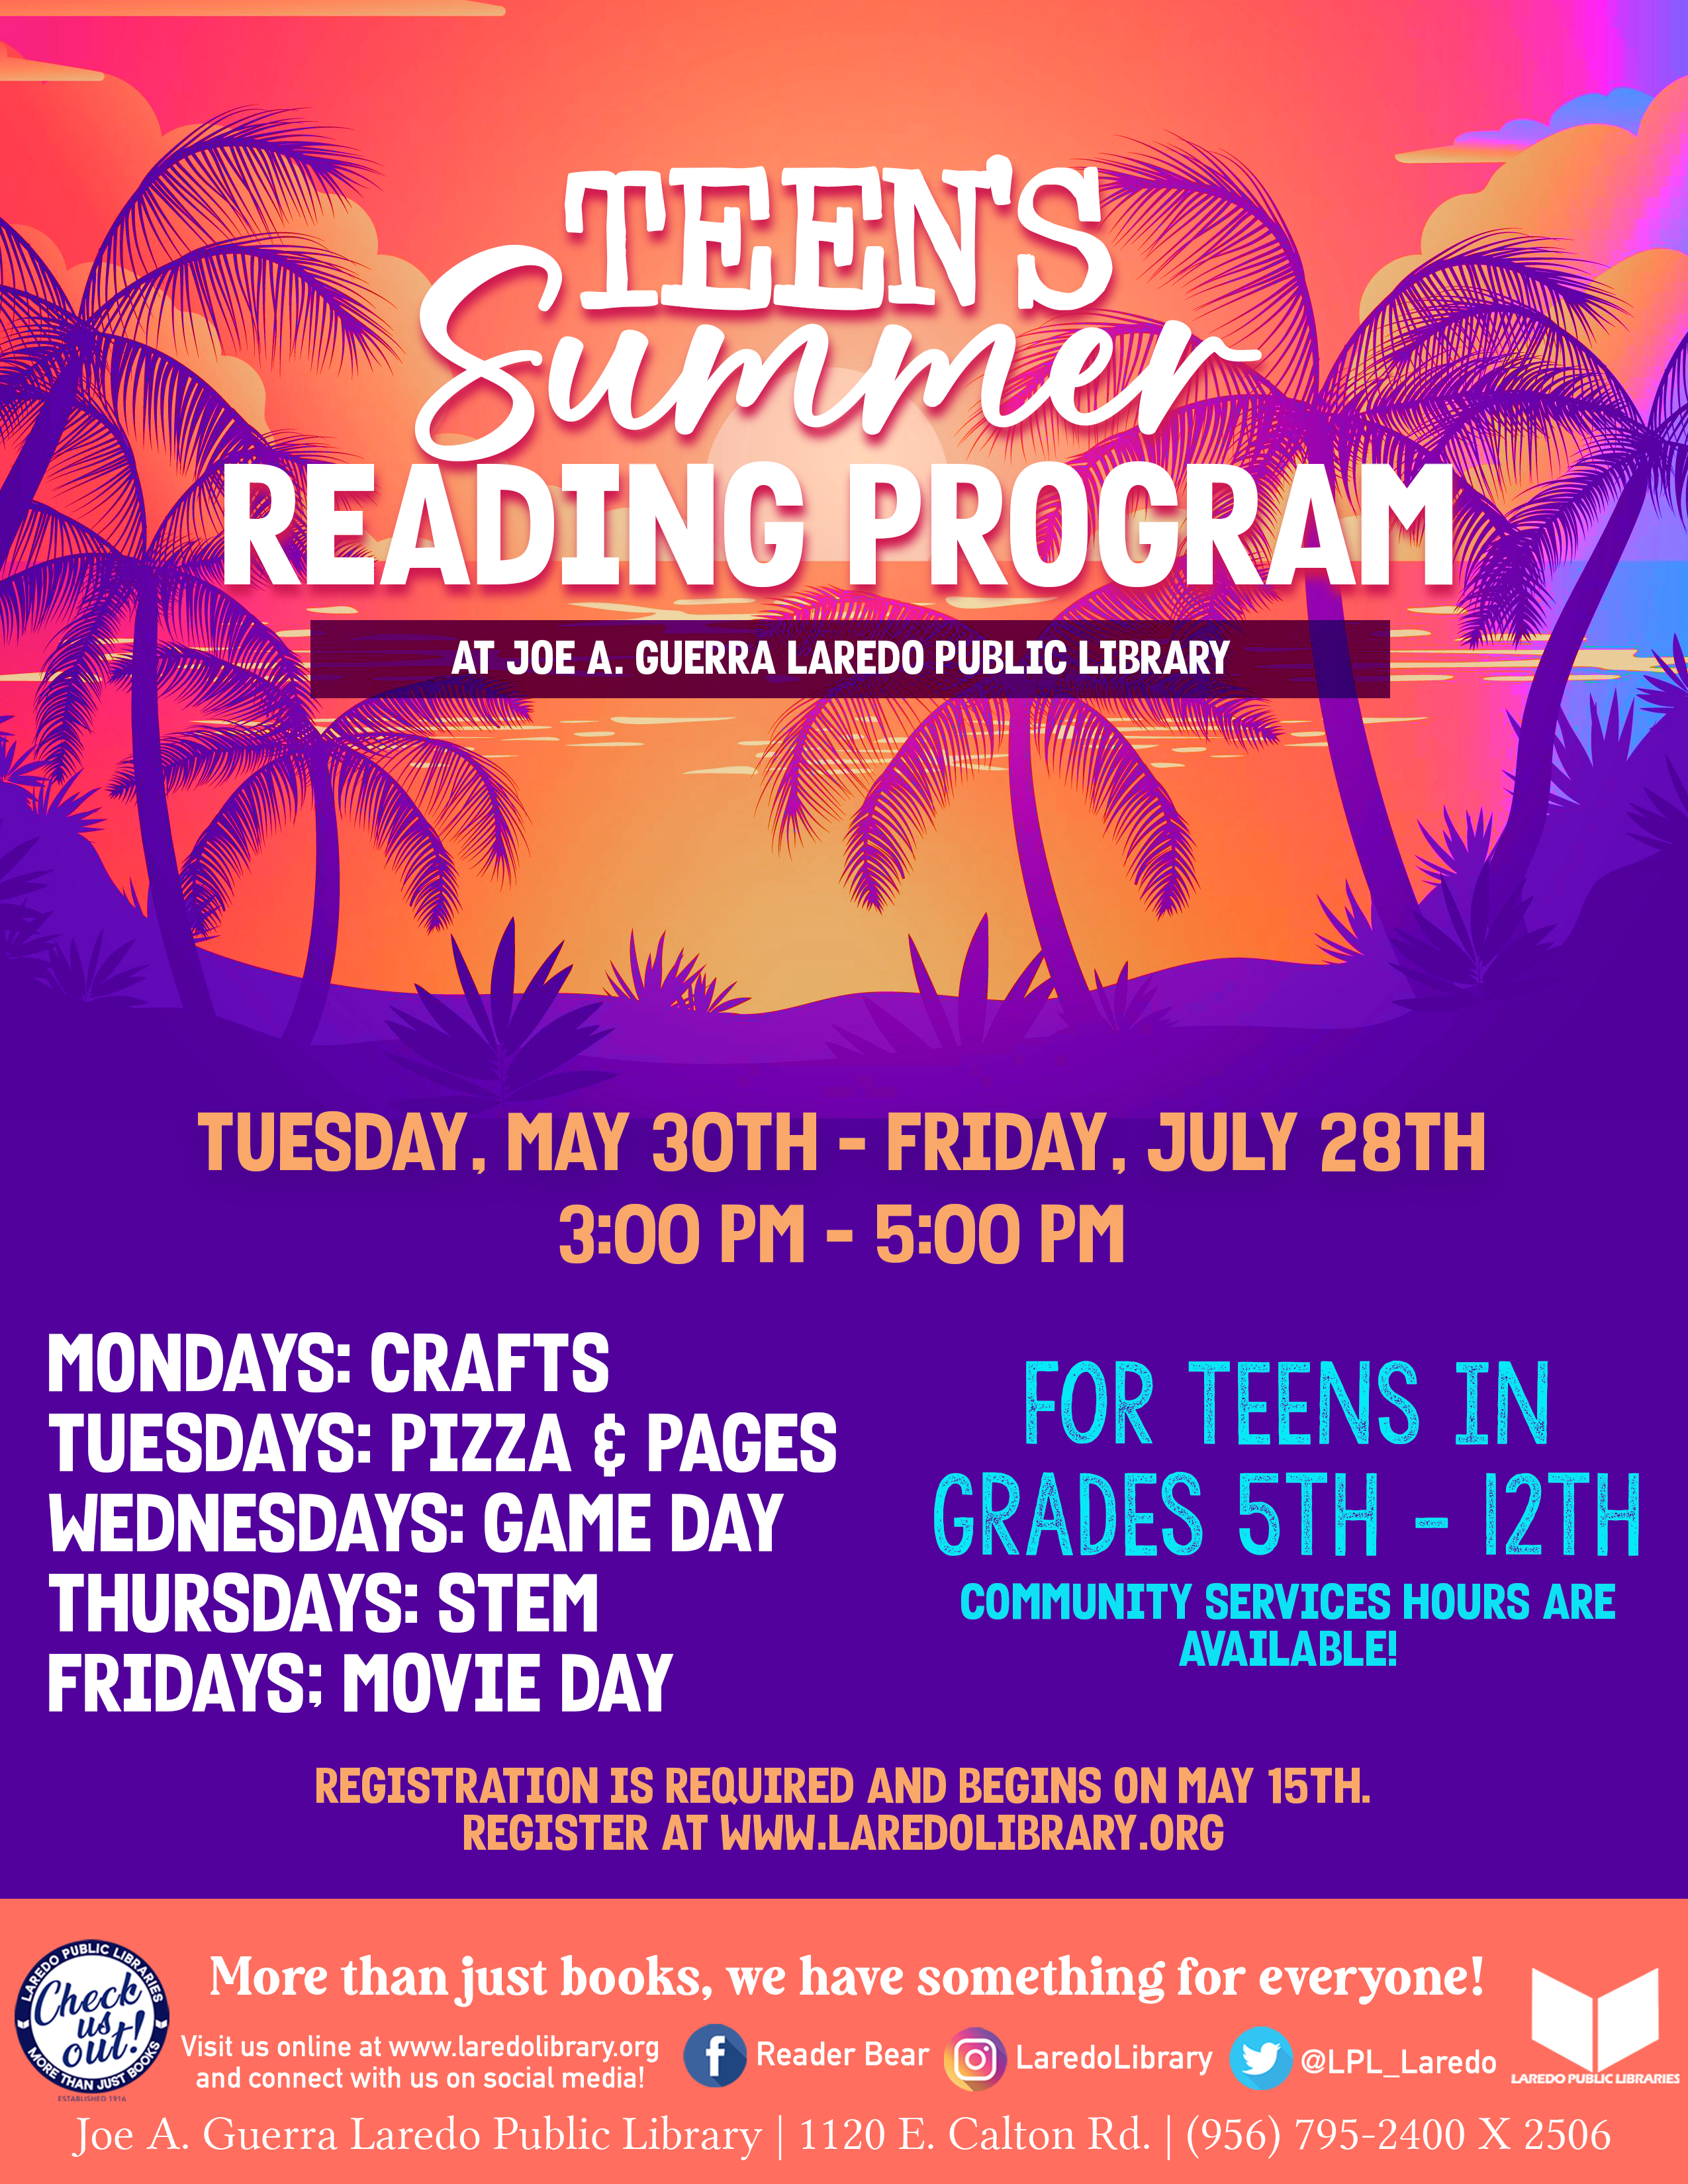 Teen’s Summer Reading Program Registration